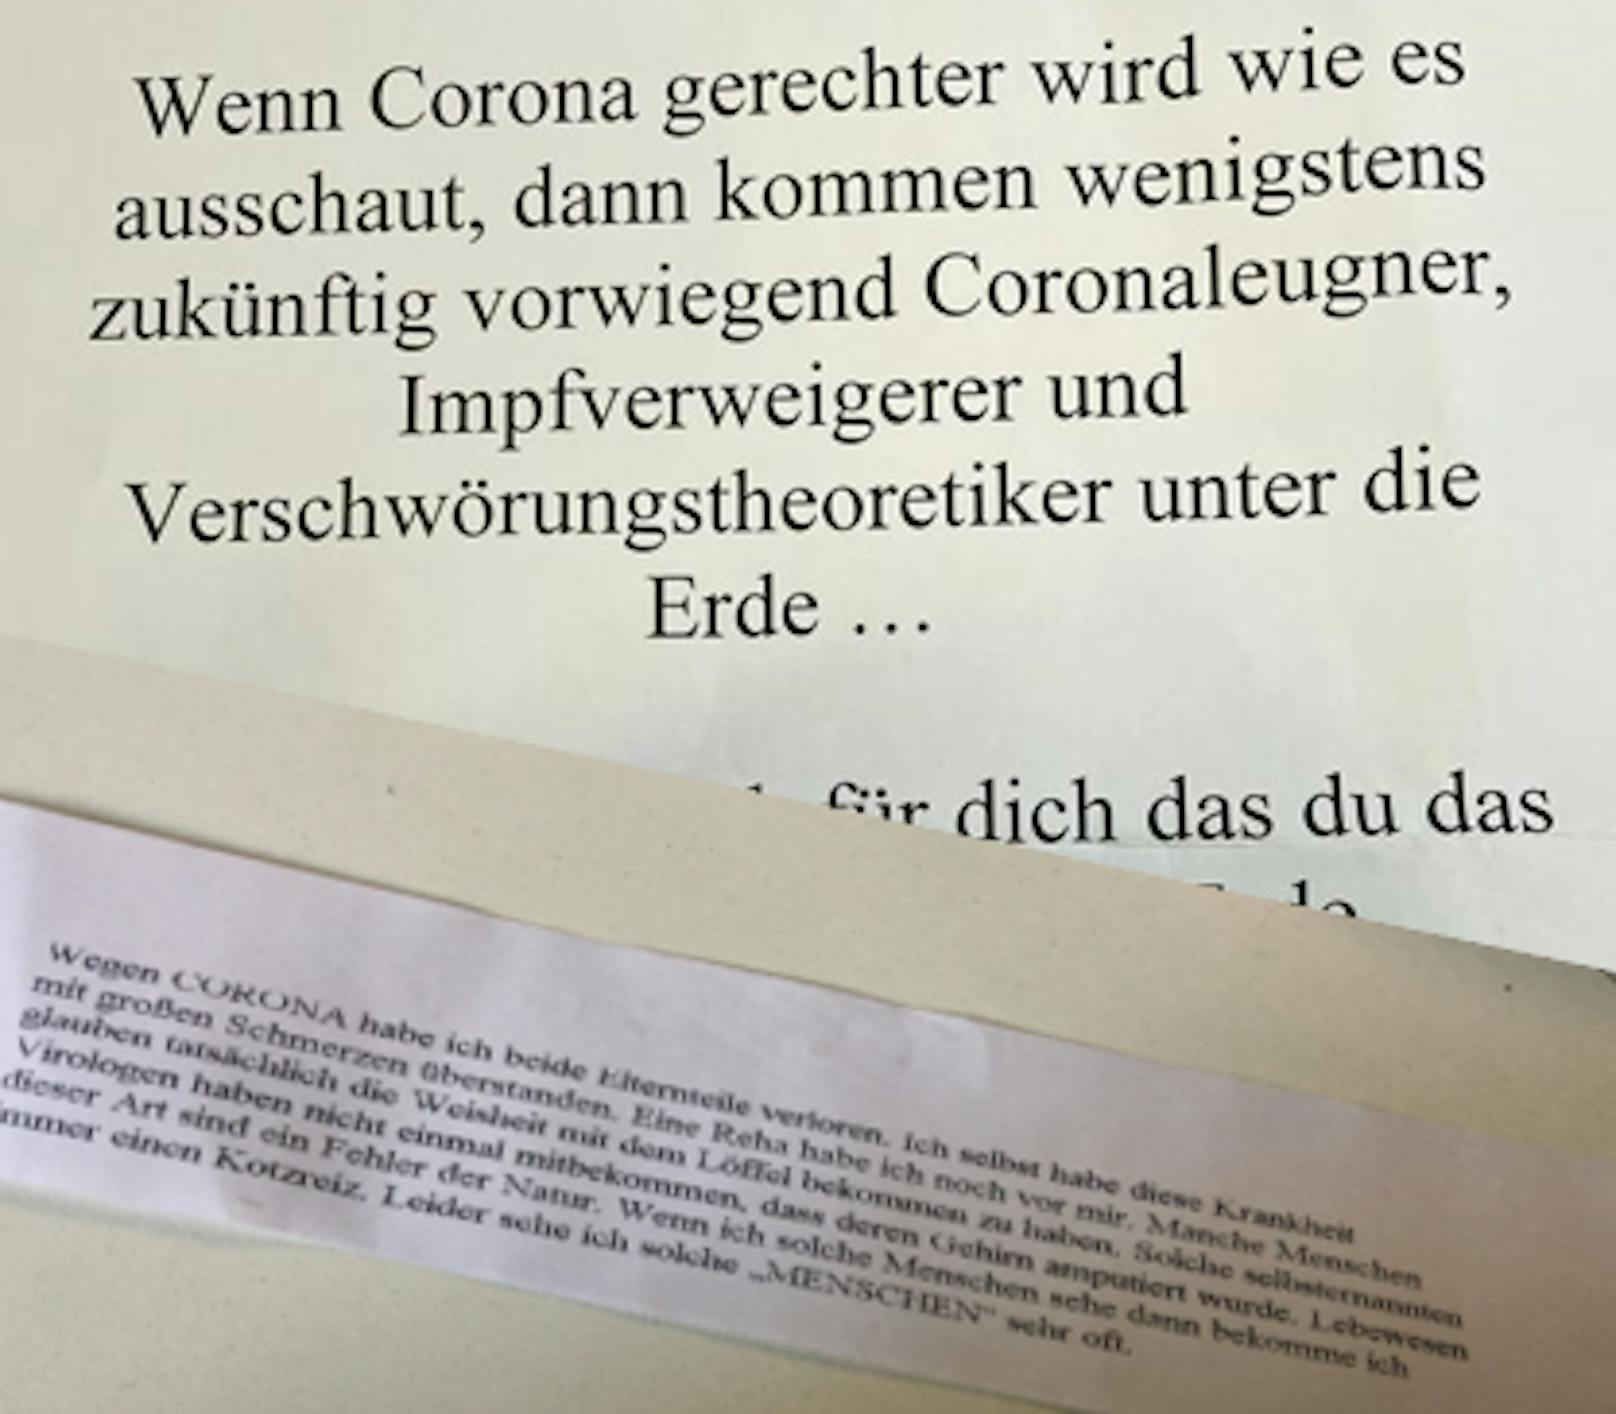 Anonyme Briefe für Unternehmer kursieren in Loosdorf.